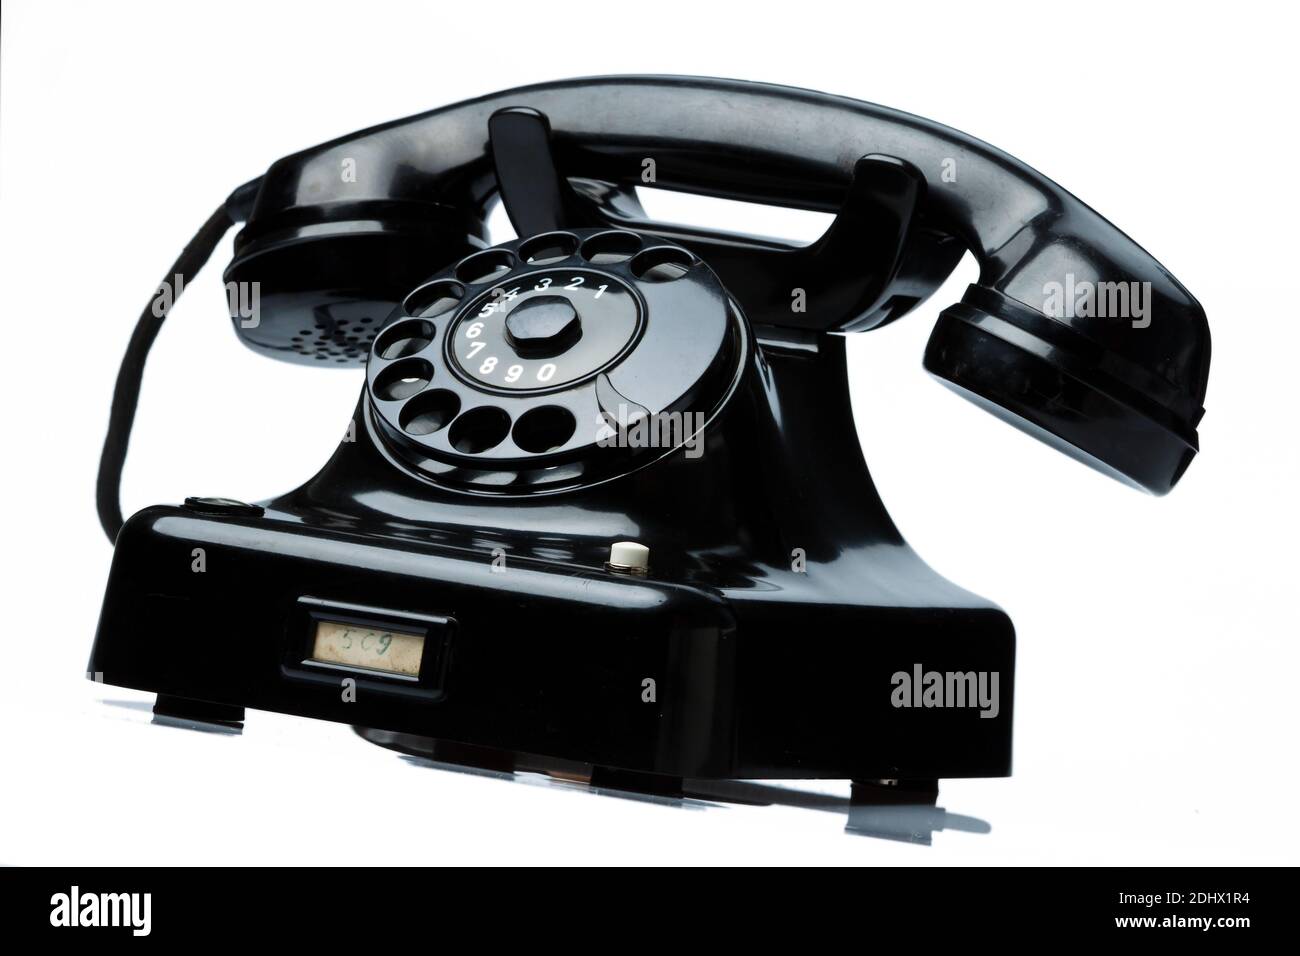 Ein antikes, altes Festnetz Telefon. Telefon auf weissem Hintergrund. Foto Stock